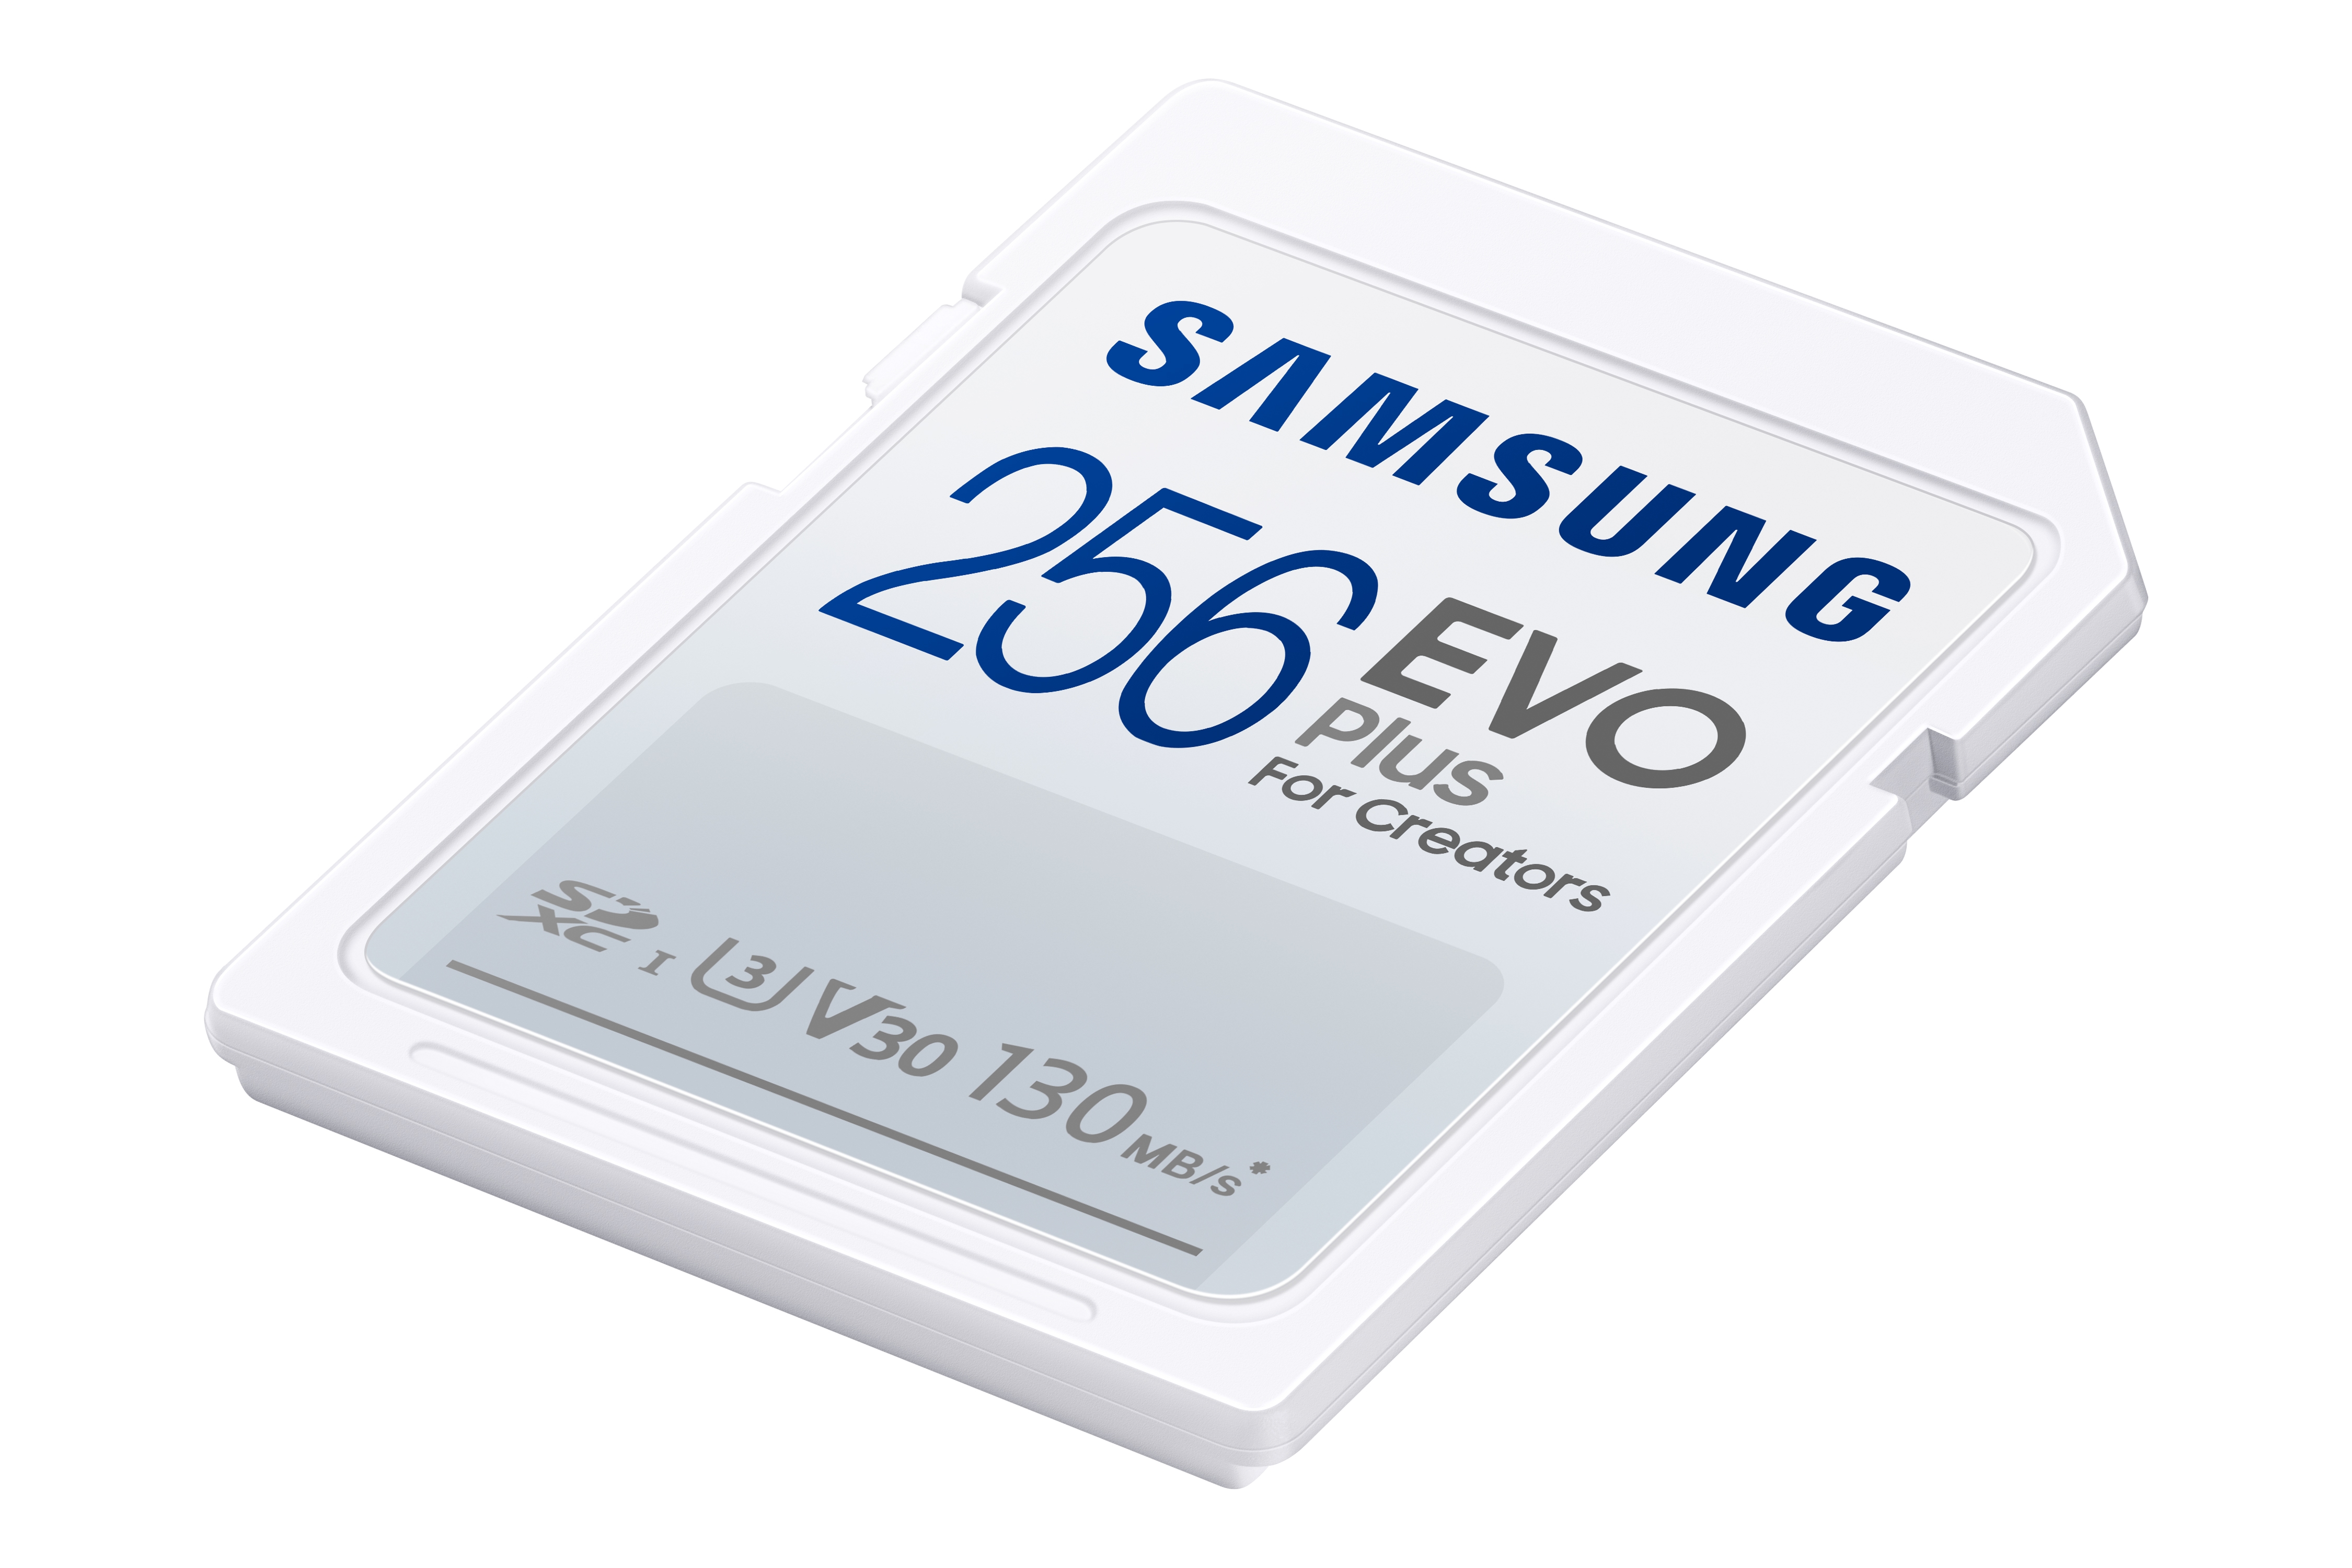 EVO Plus Full-Size SDXC Card 256GB Memory & Storage - MB-SC256K/AM